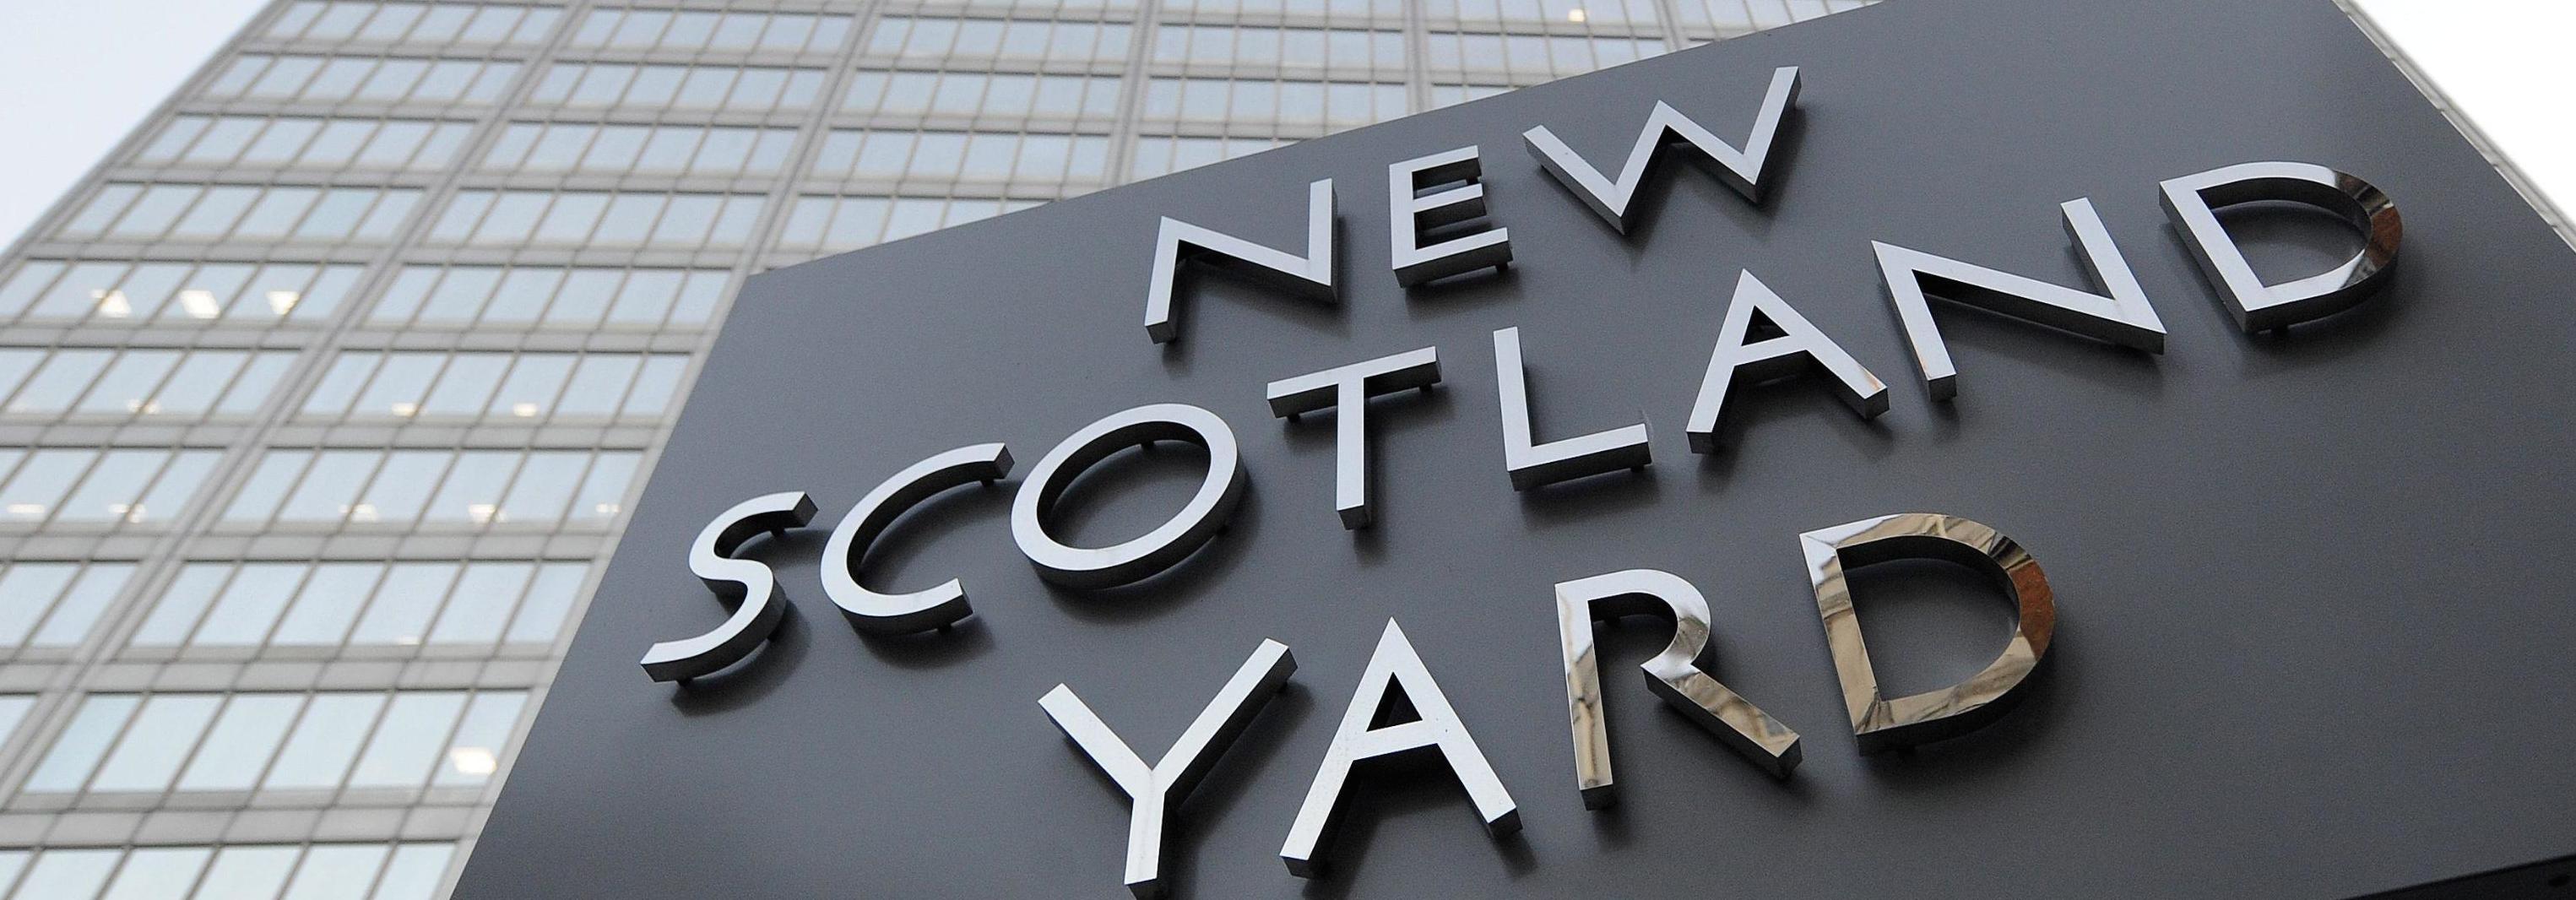 La sede di Scotland Yard